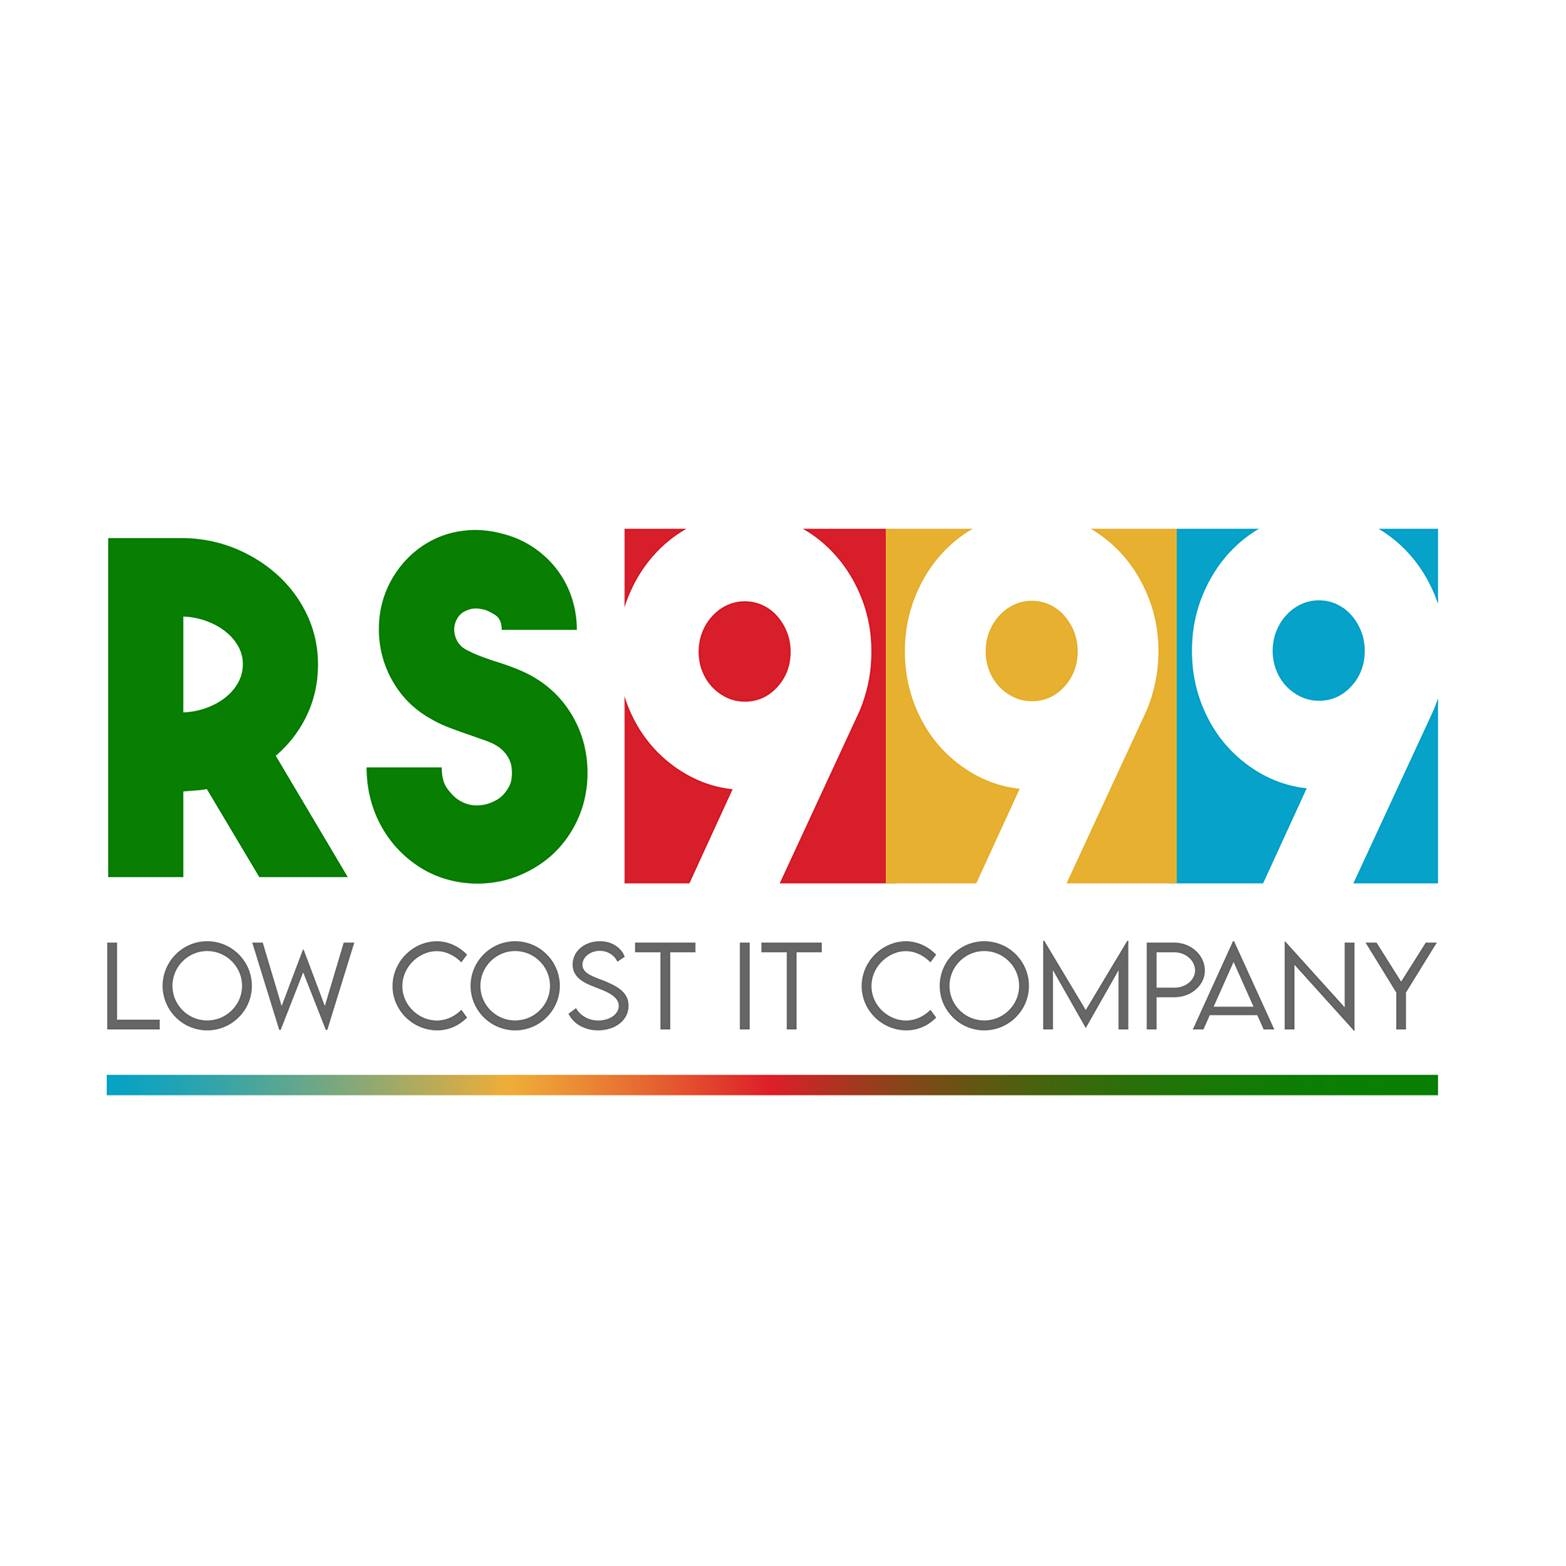 Rs999 Web Services